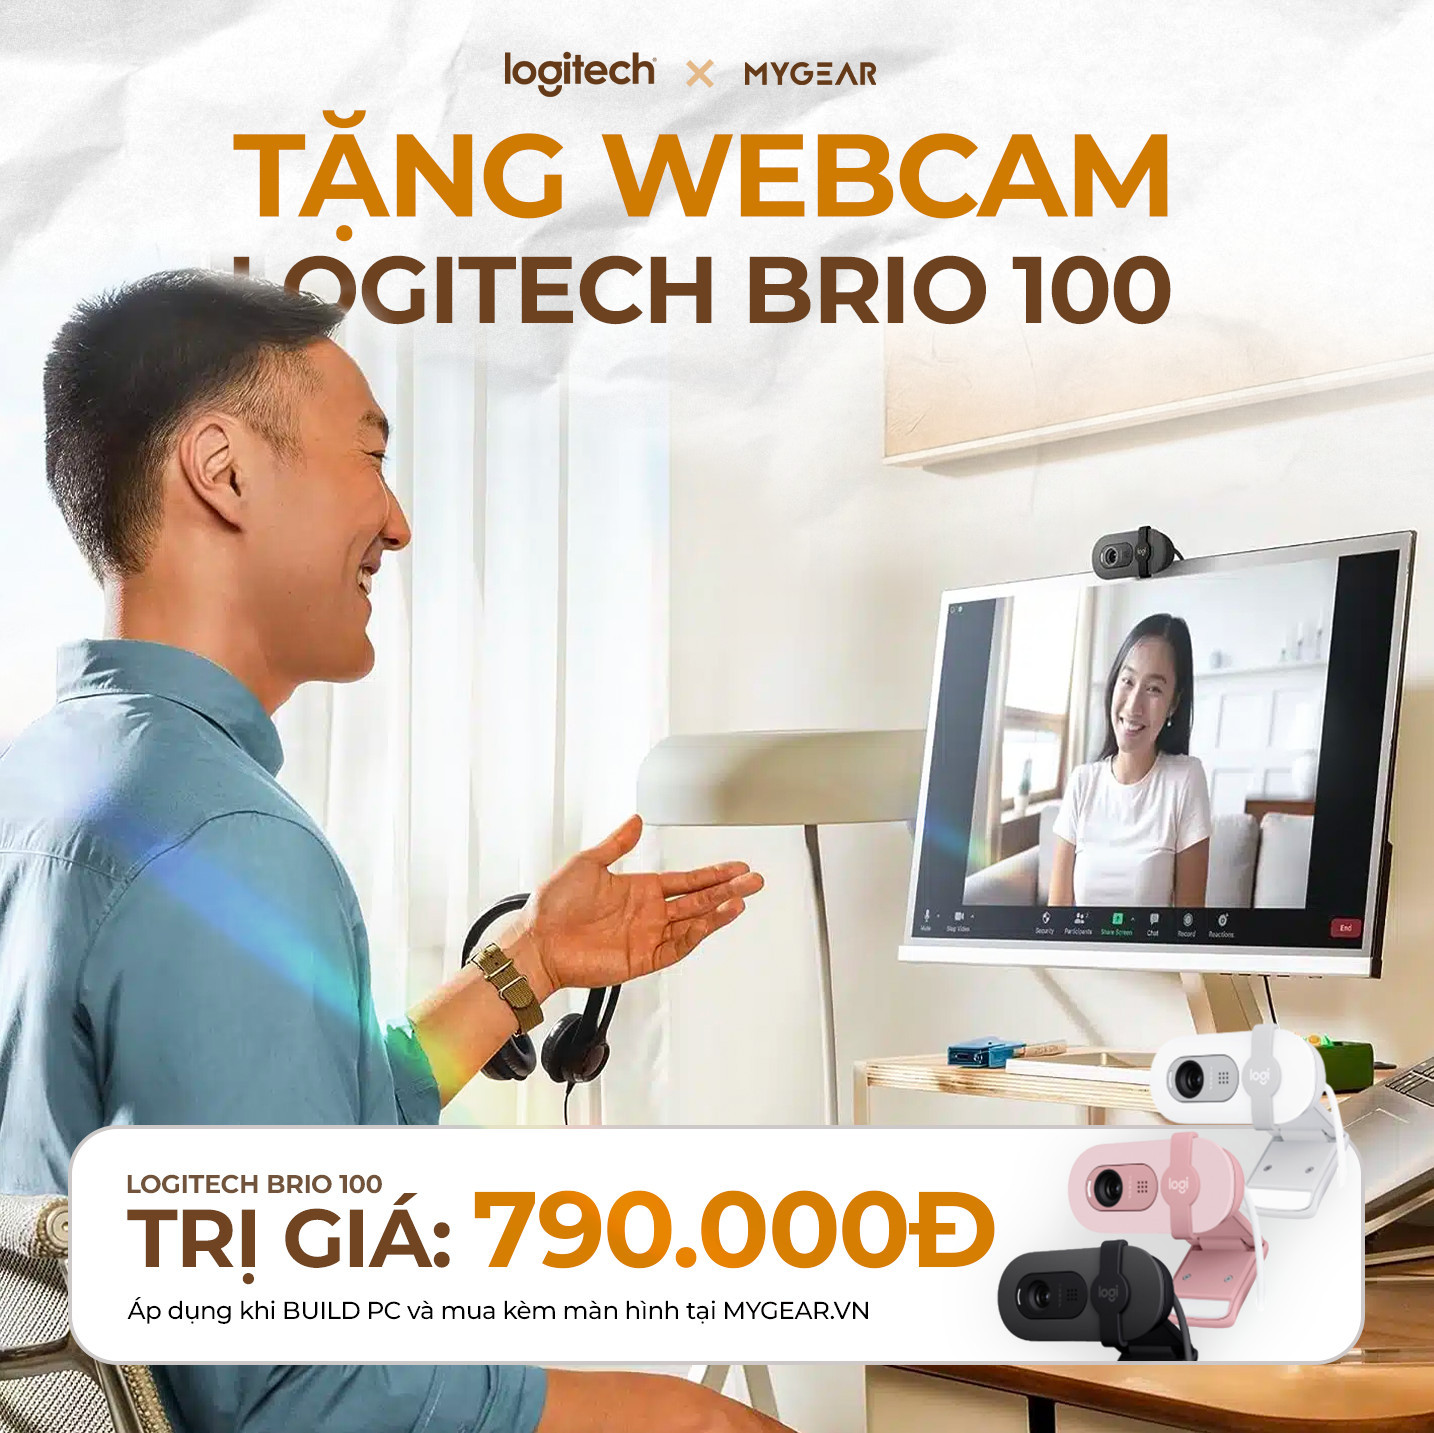 BUILD PC TRÊN 20 TRIỆU - NHẬN NGAY WEBCAM BRIO 100